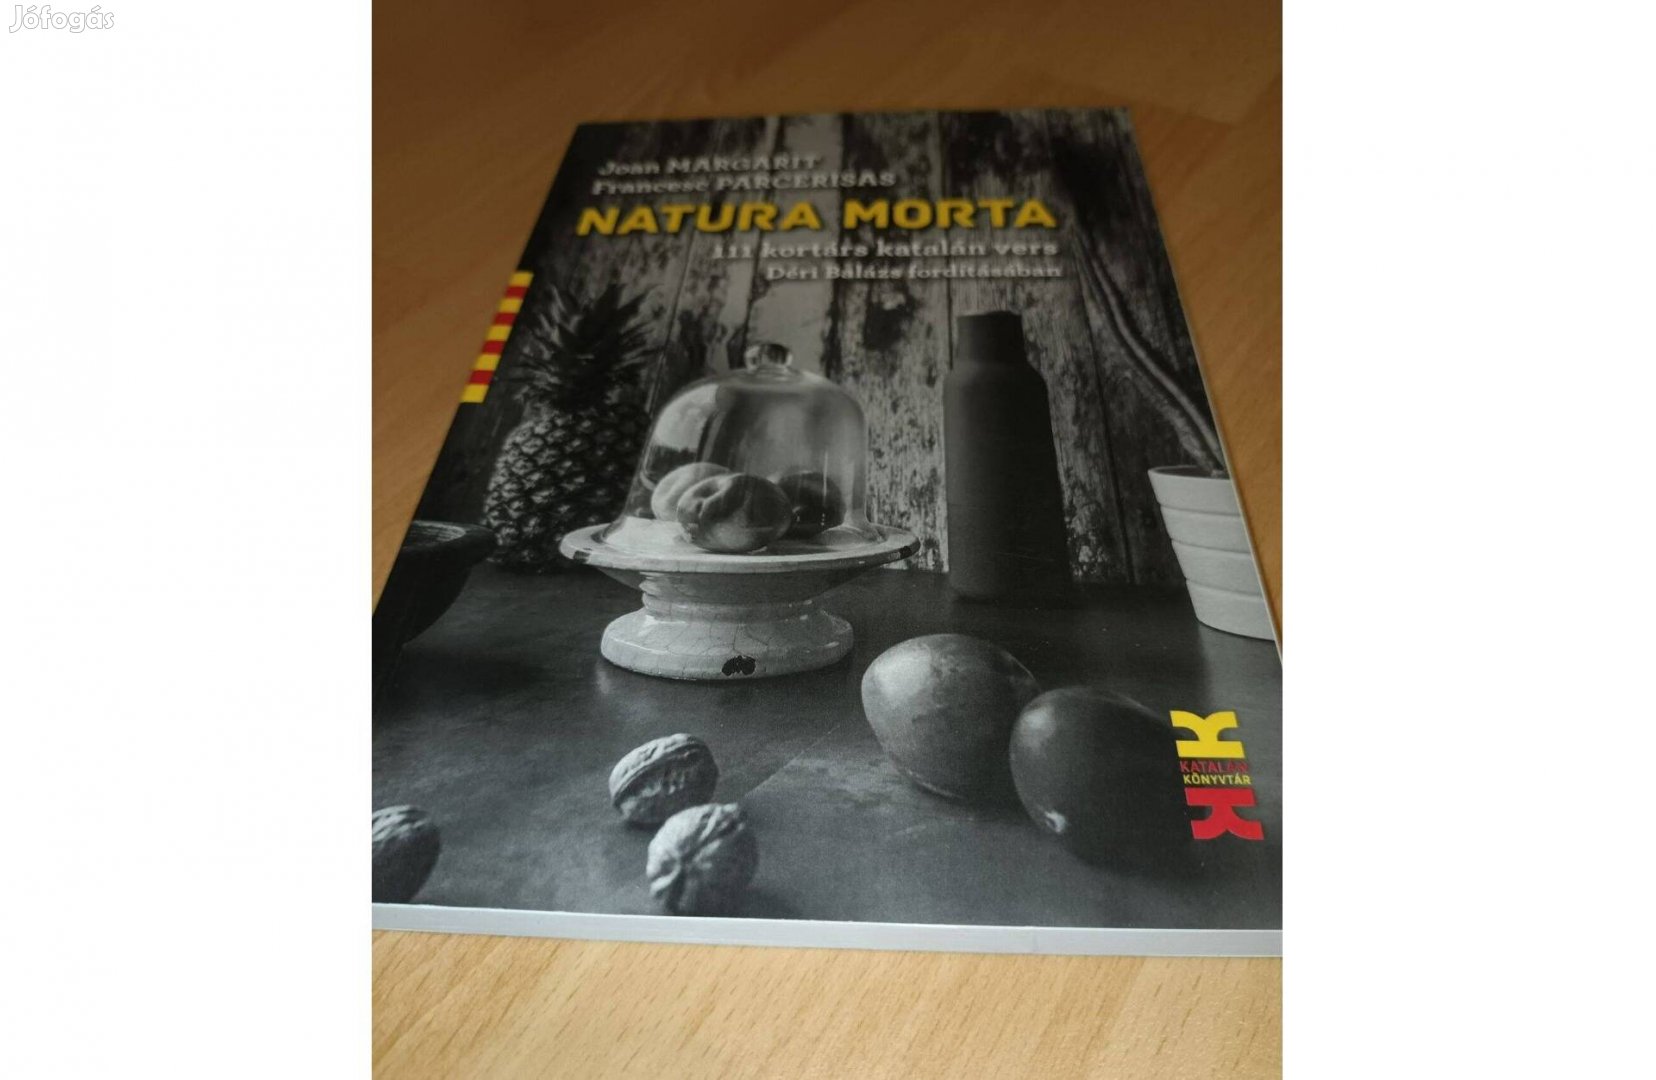 Natura morta (111 kortárs katalán vers) - Új